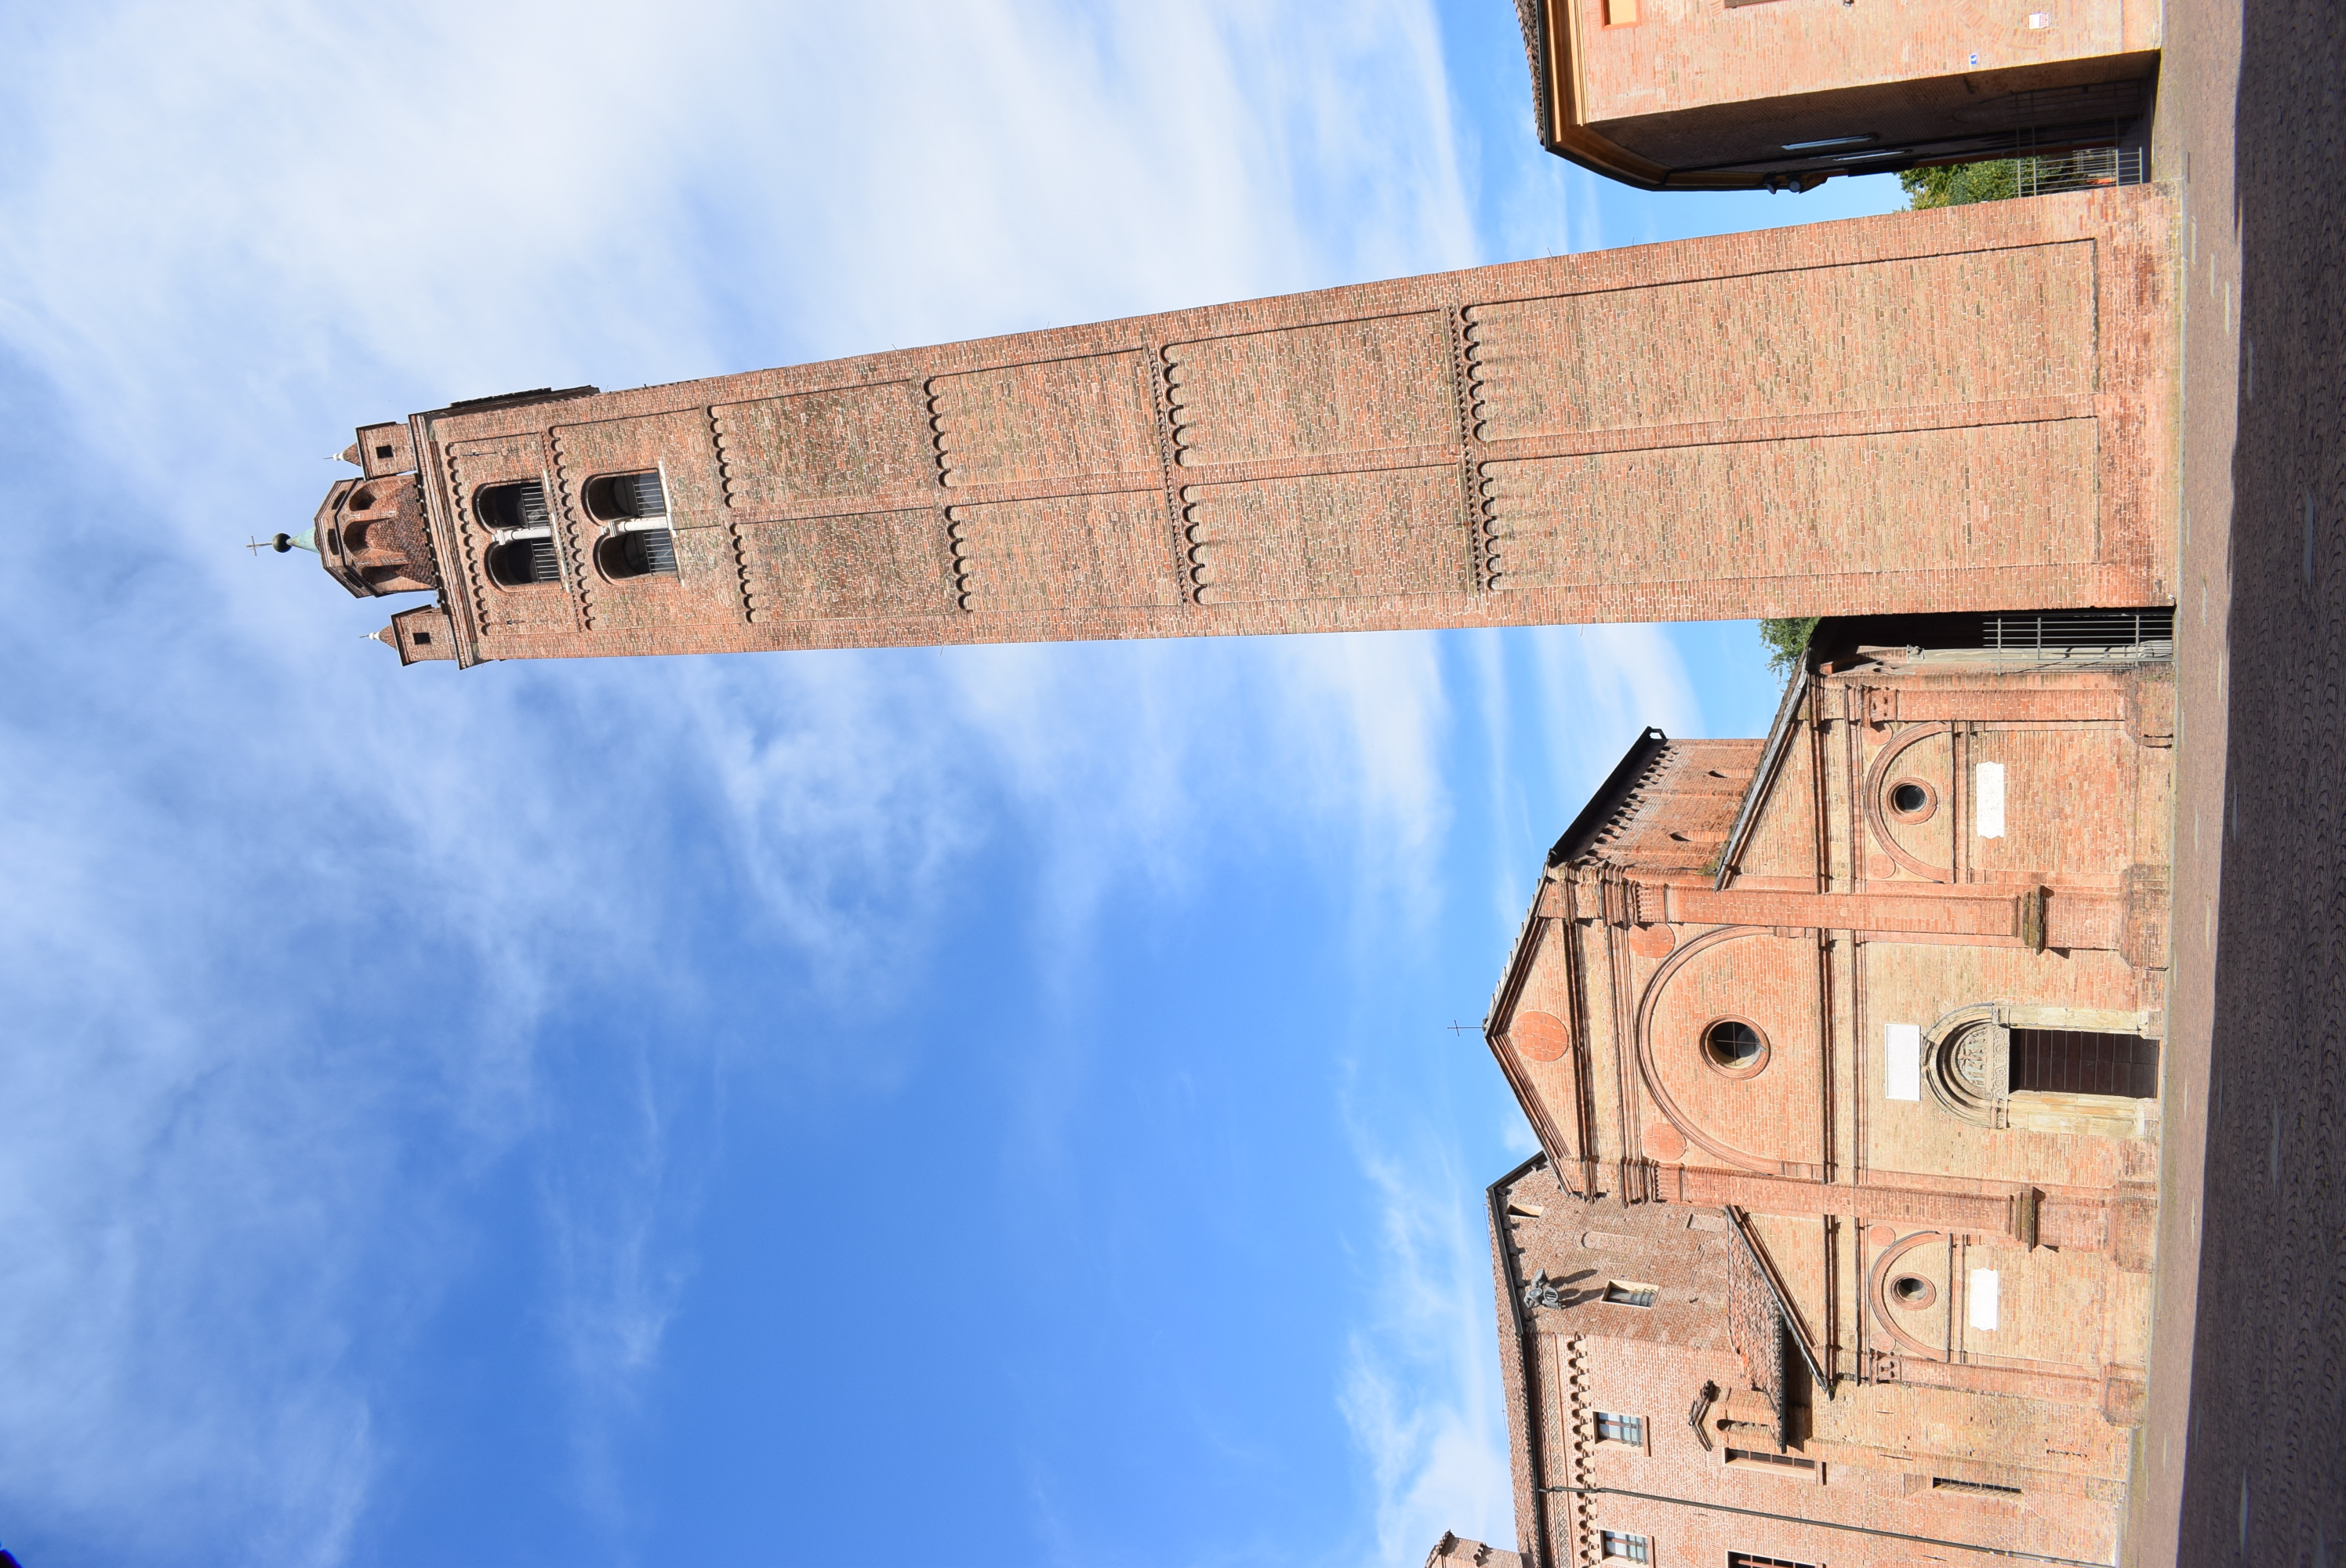 Campanile della Chiesa di S. Maria in Castello (campanile) - Carpi (MO) 